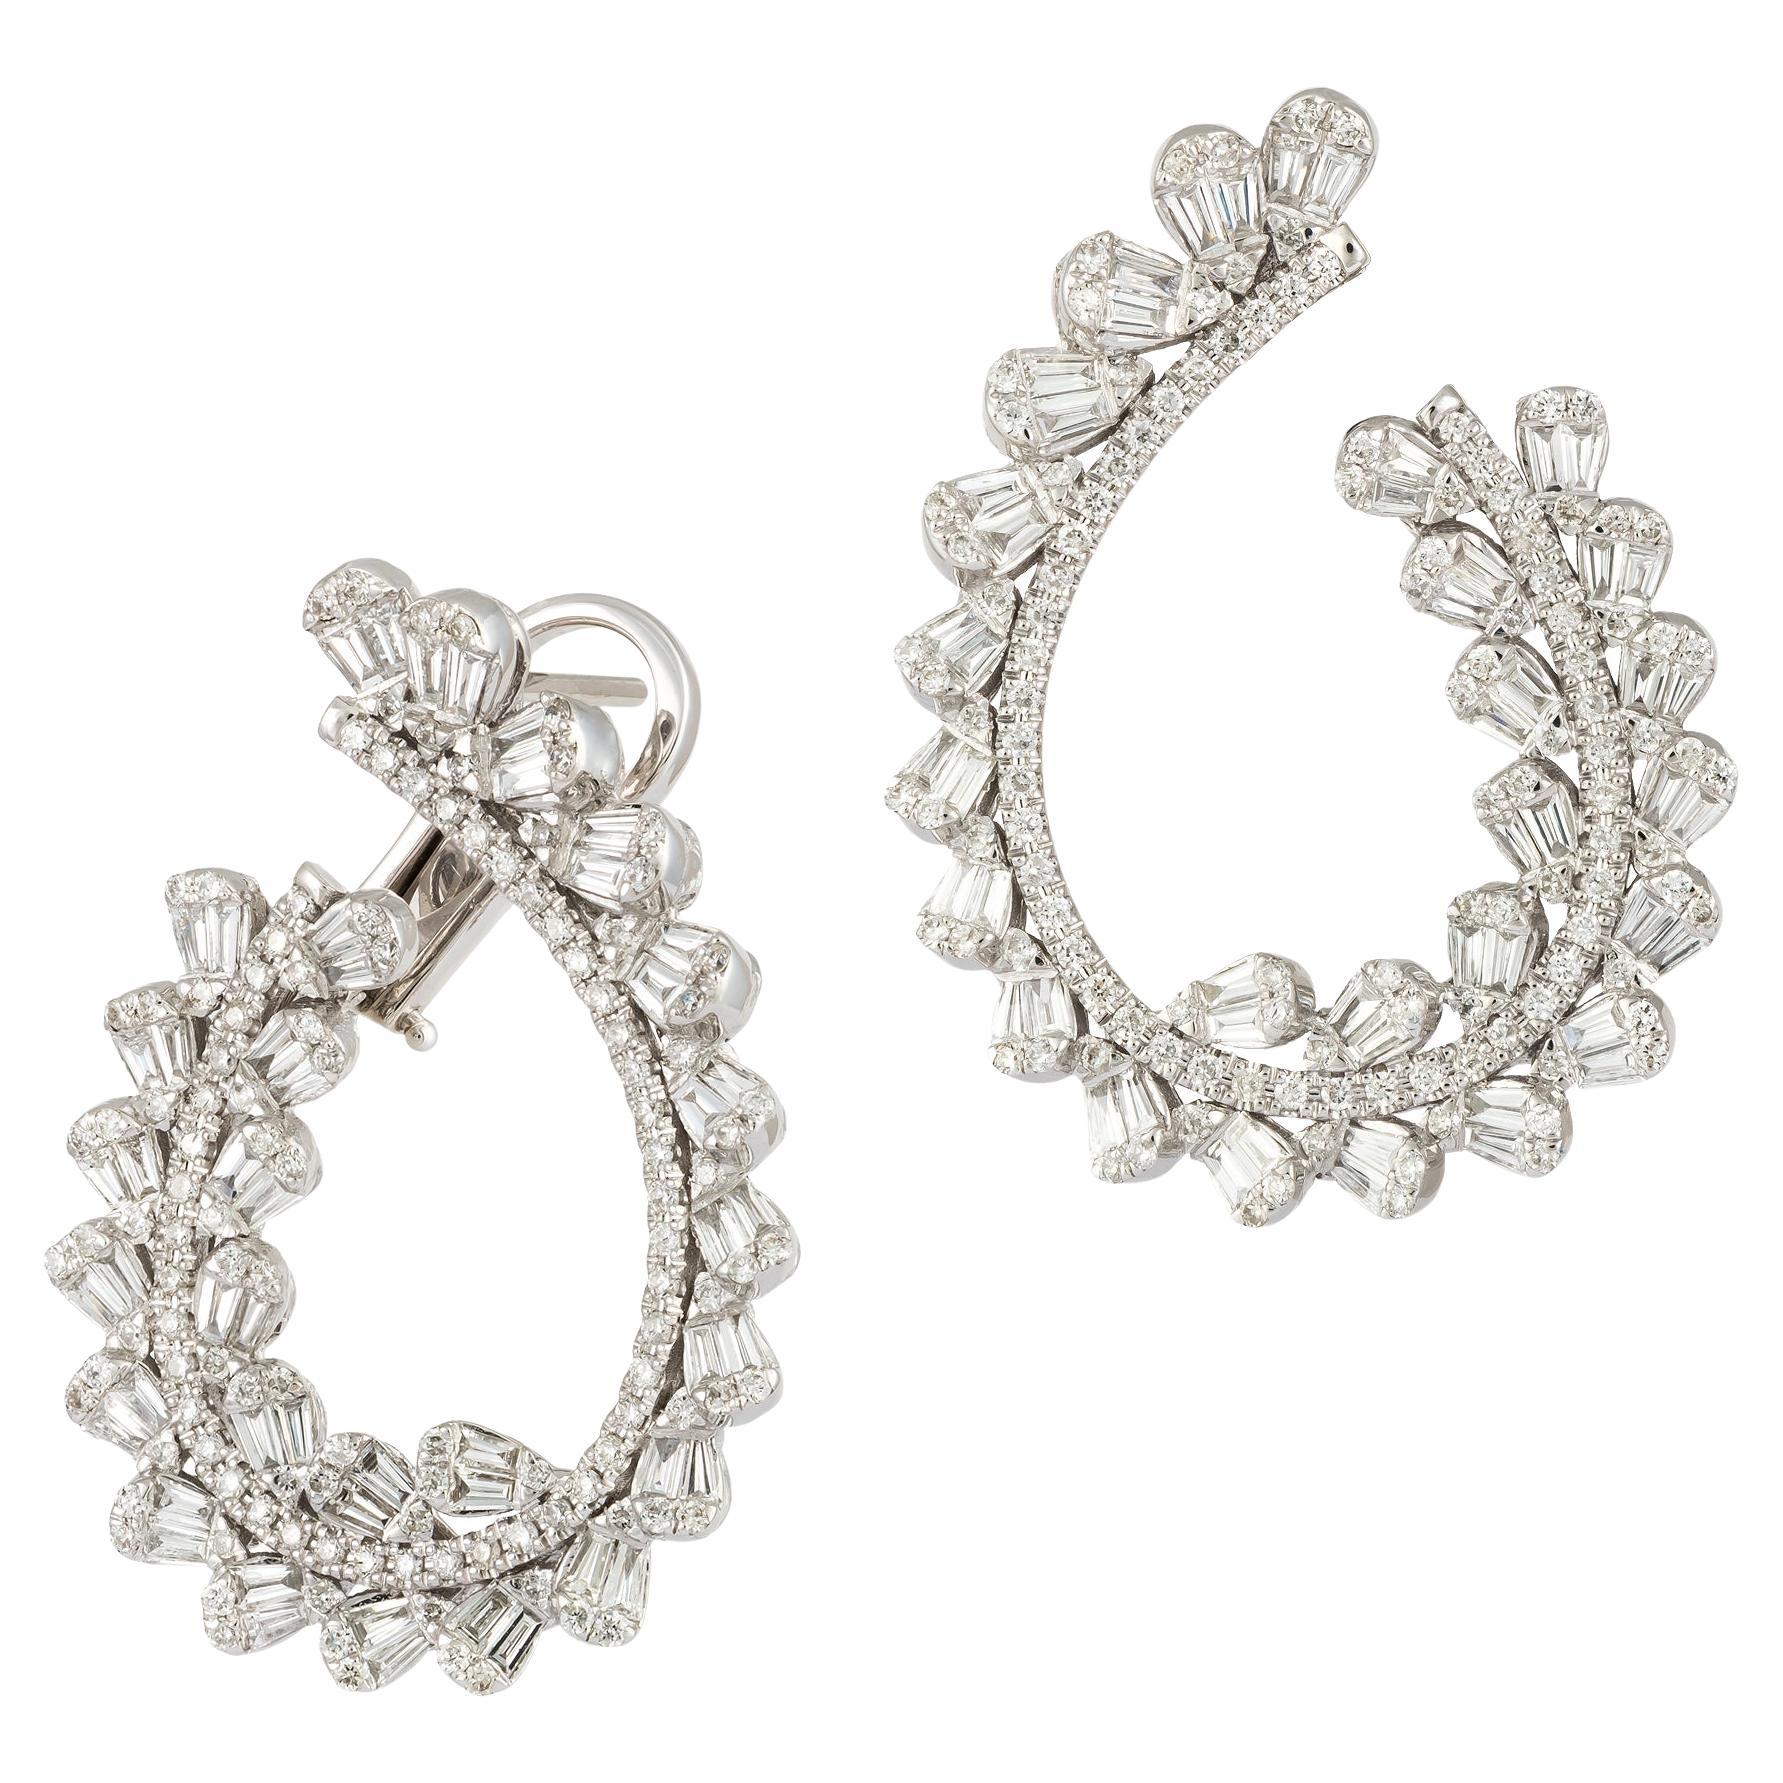 Modern White Gold 18K Earrings Diamond For Her For Sale